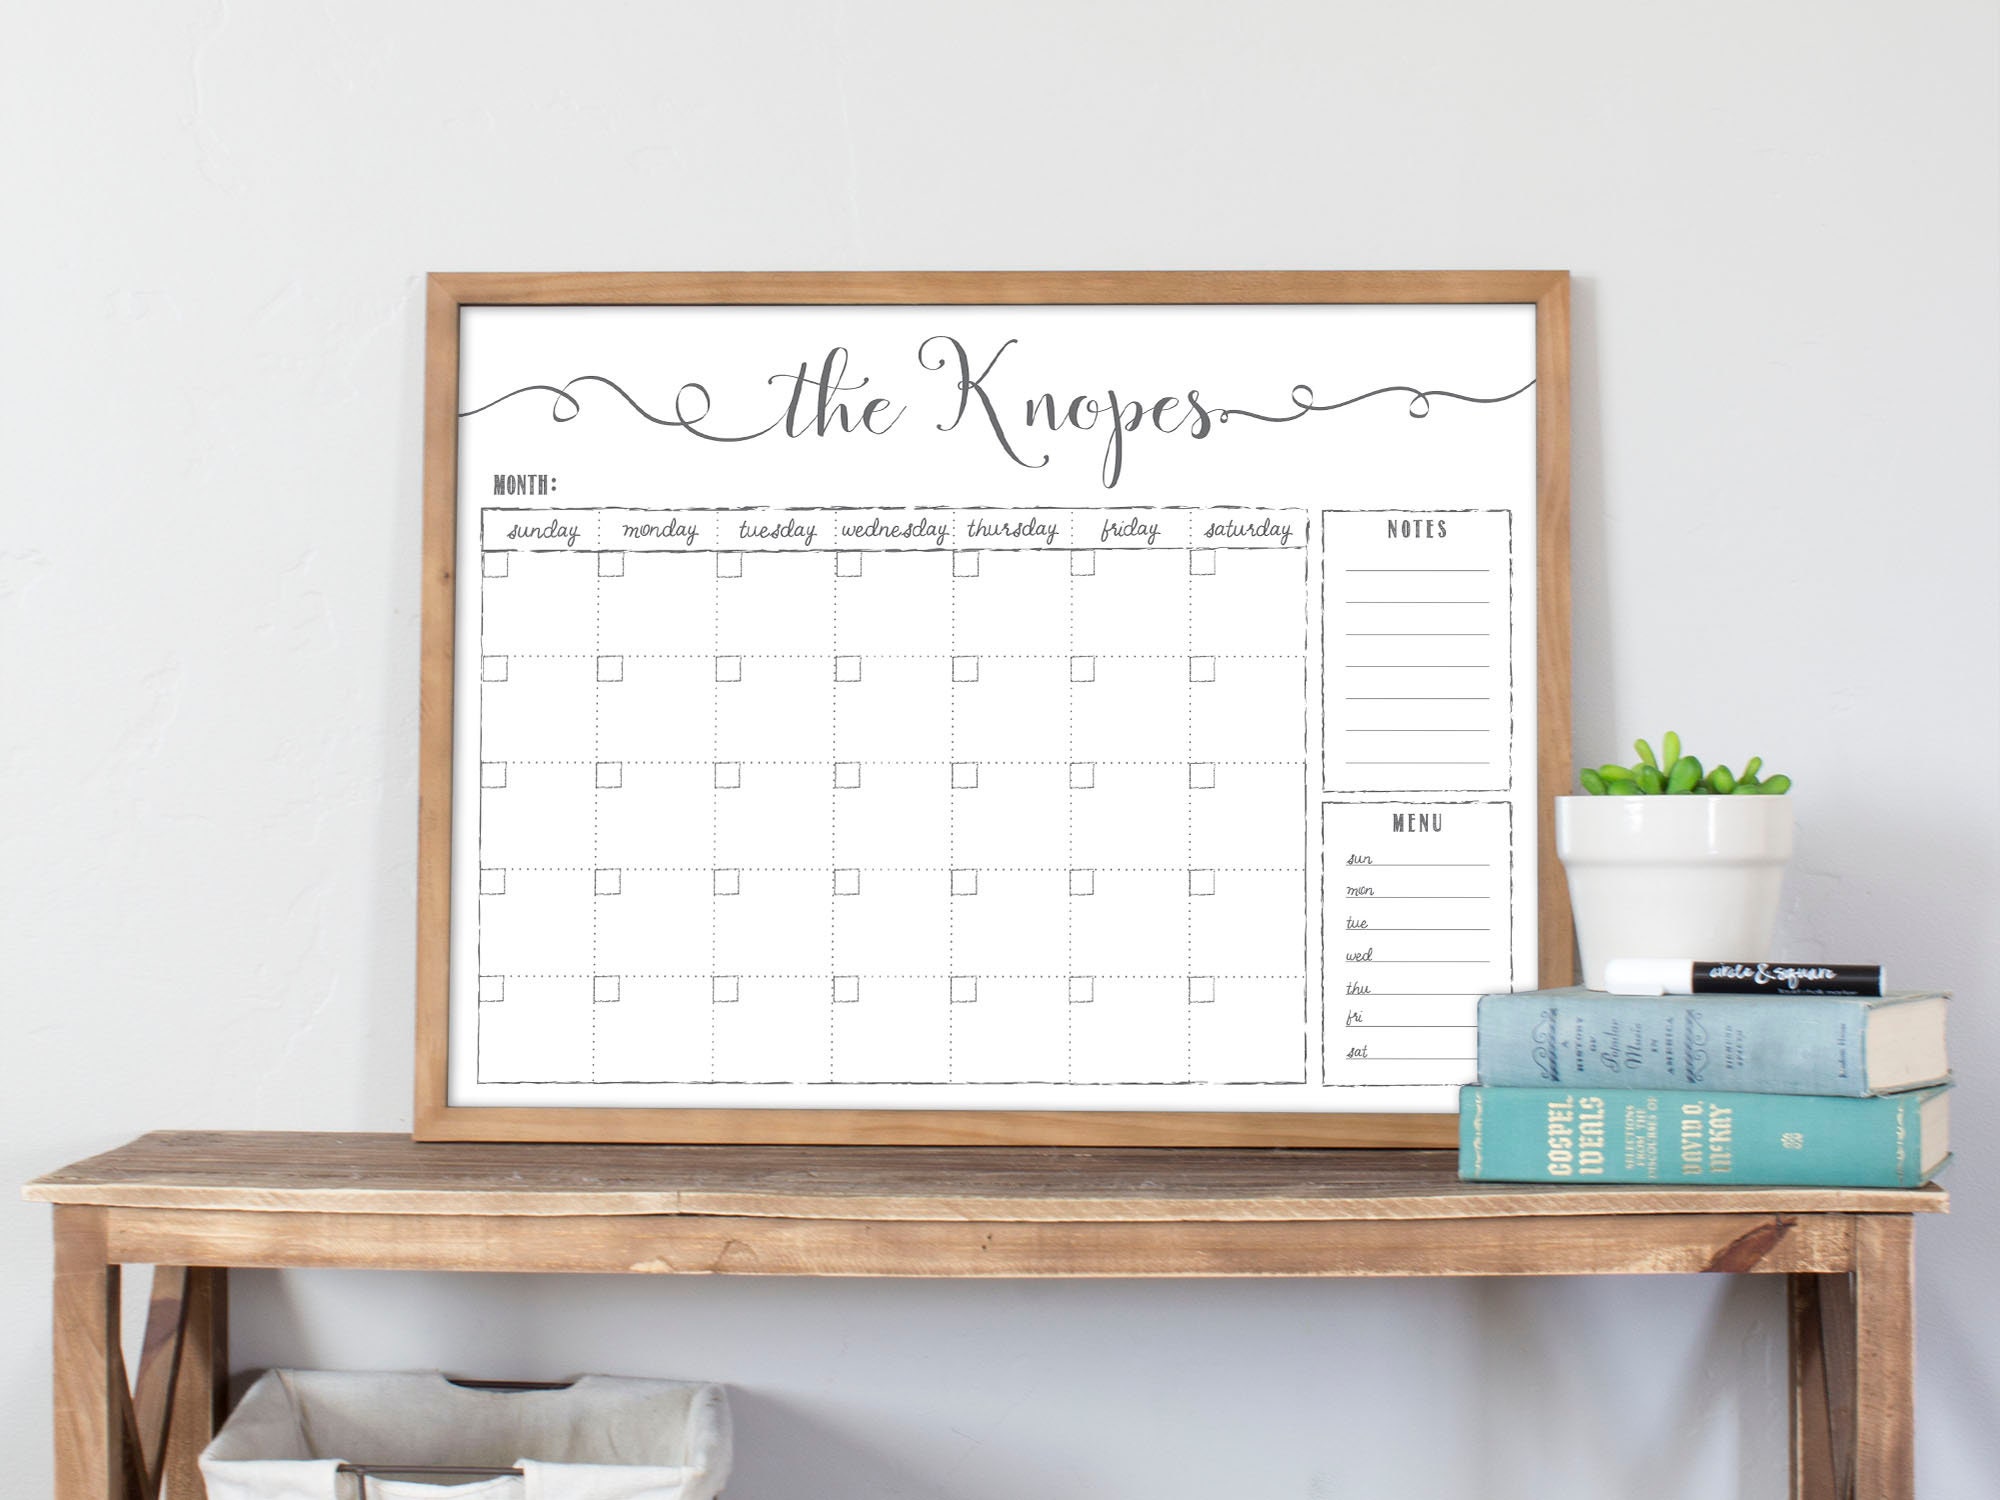 Fridge Magnetic Dry Erase Calendar Whiteboard Family Memo Monthly Planner Board 